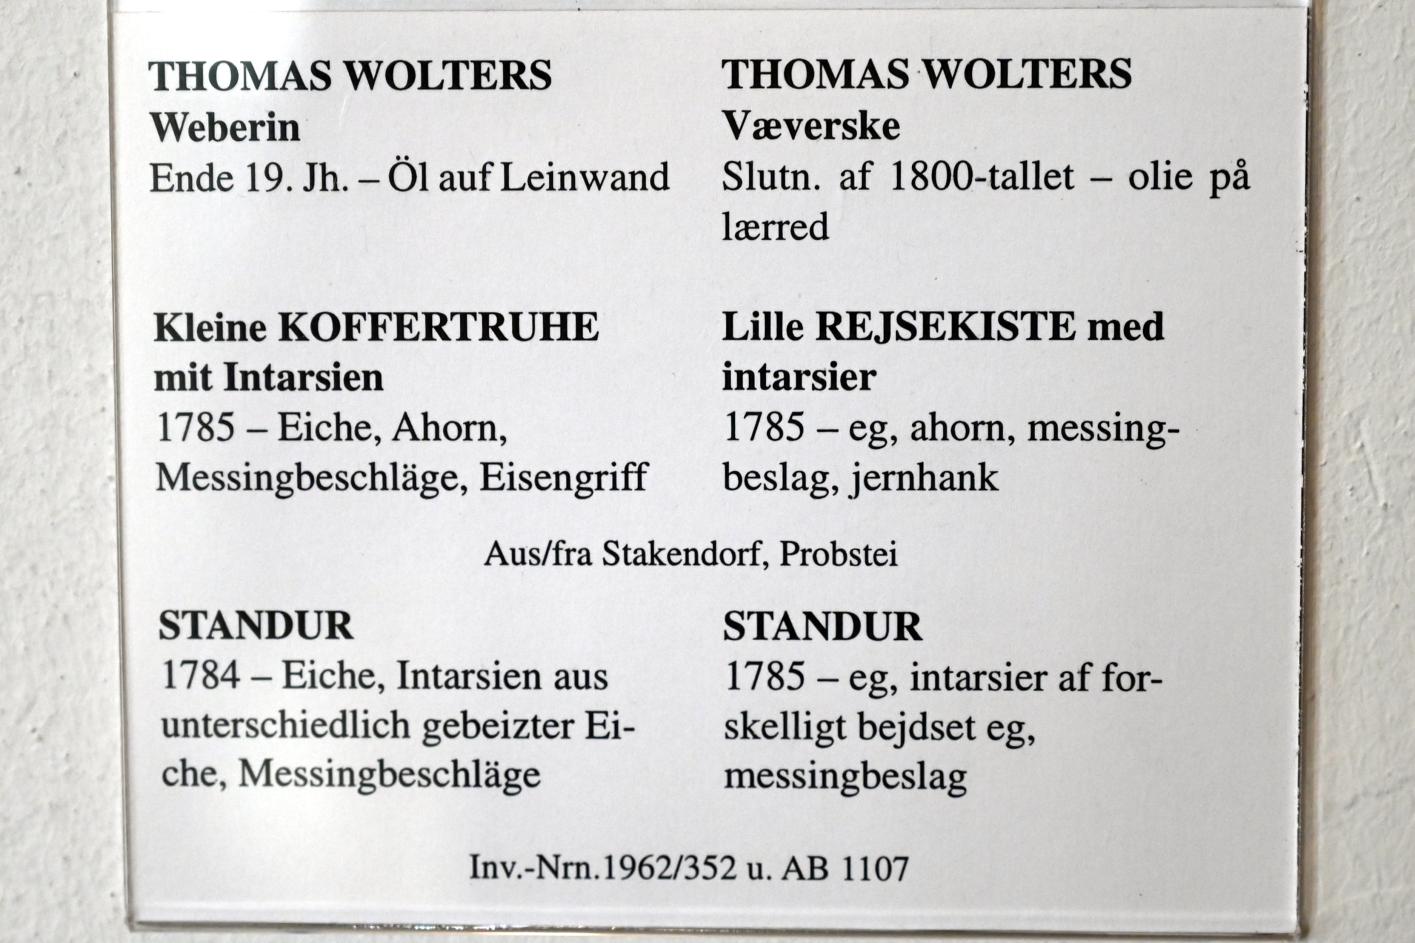 Thomas Wolters (1895), Weberin, Schleswig, Landesmuseum für Kunst und Kulturgeschichte, Saal 100, Ende 19. Jhd., Bild 2/2